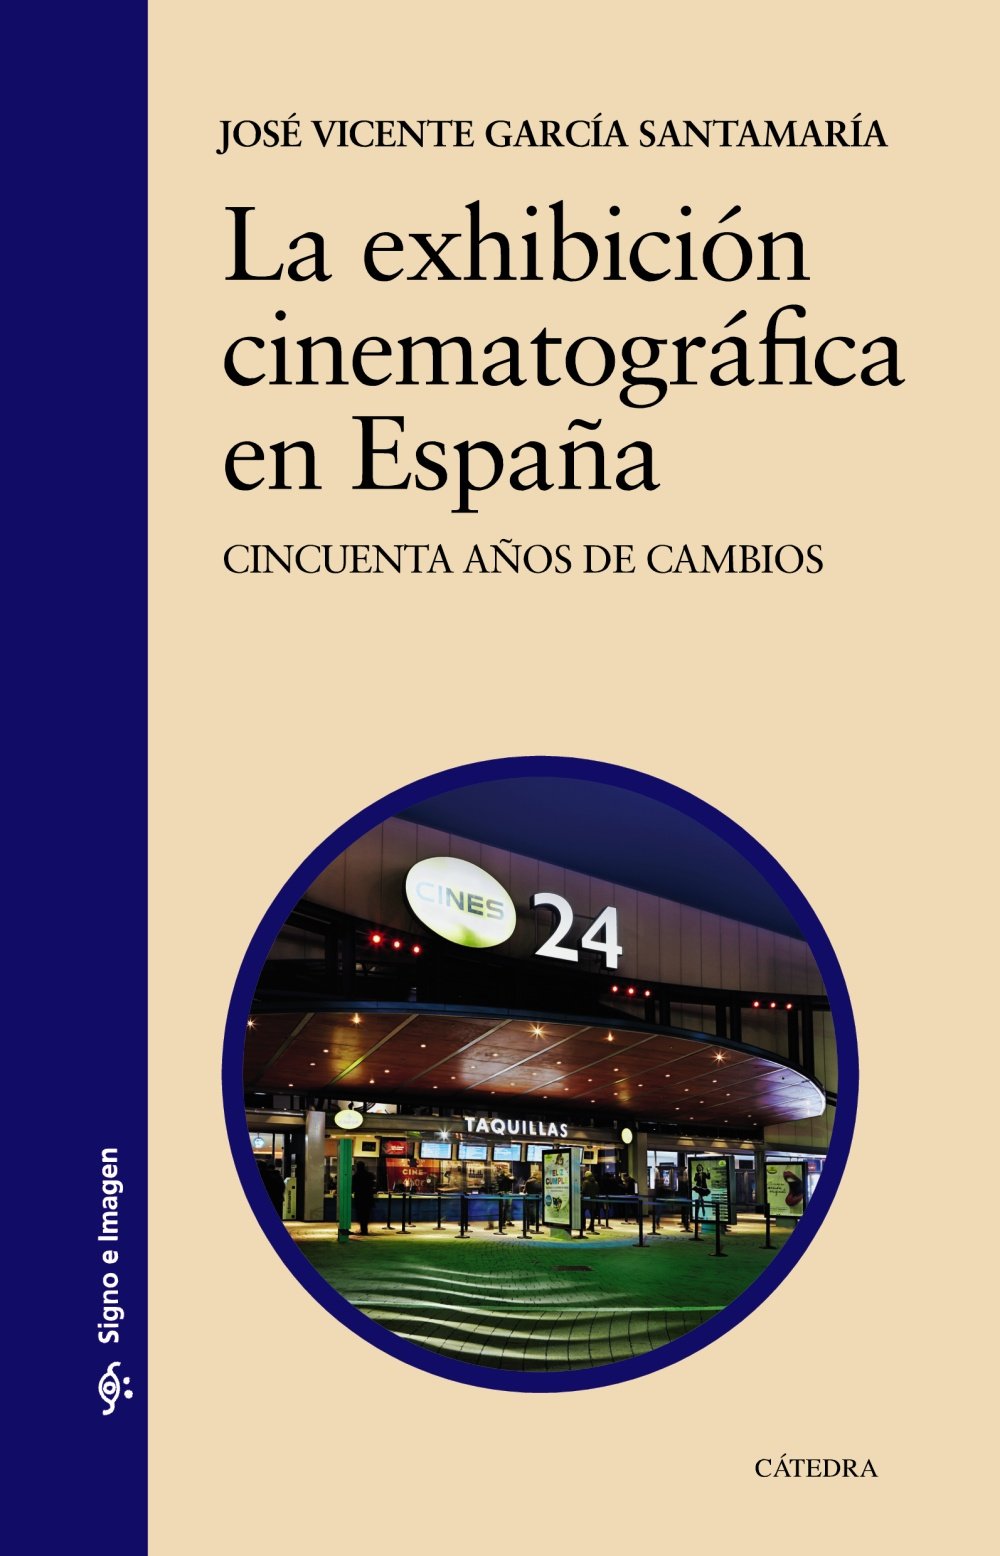 Imagen de portada del libro La exhibición cinematográfica en España